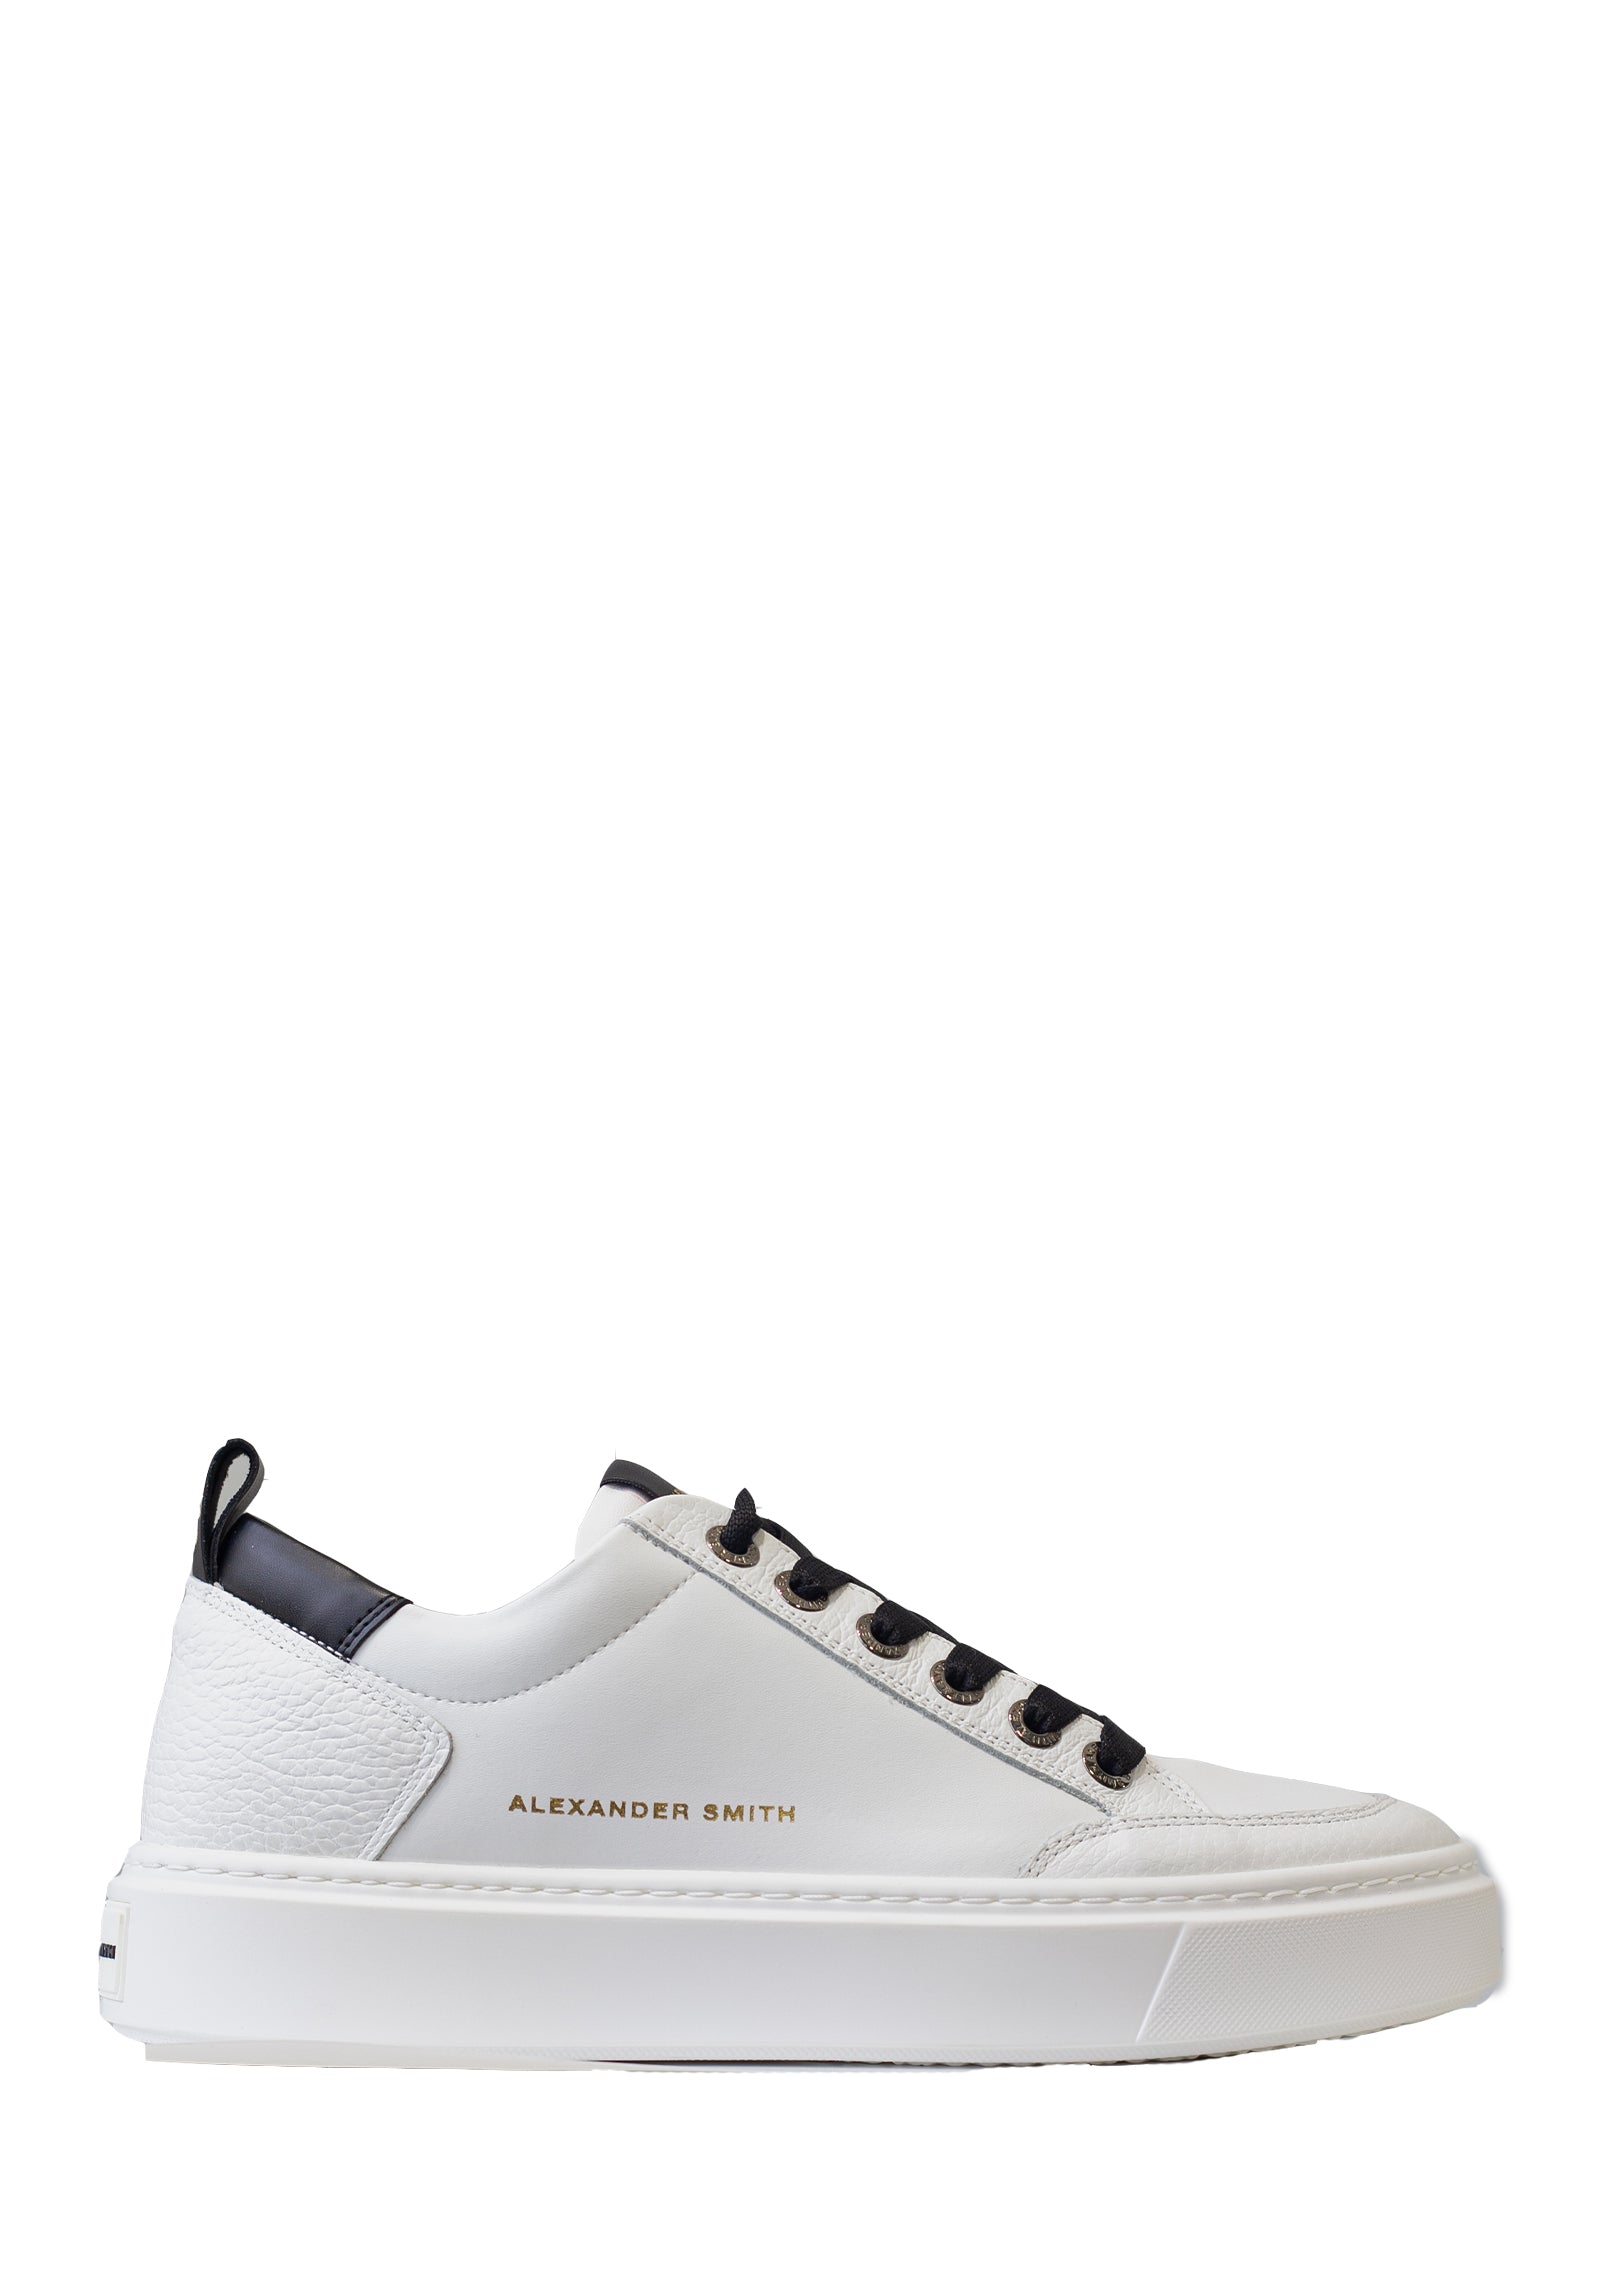 Sneakers Cambridge in pelle bianca